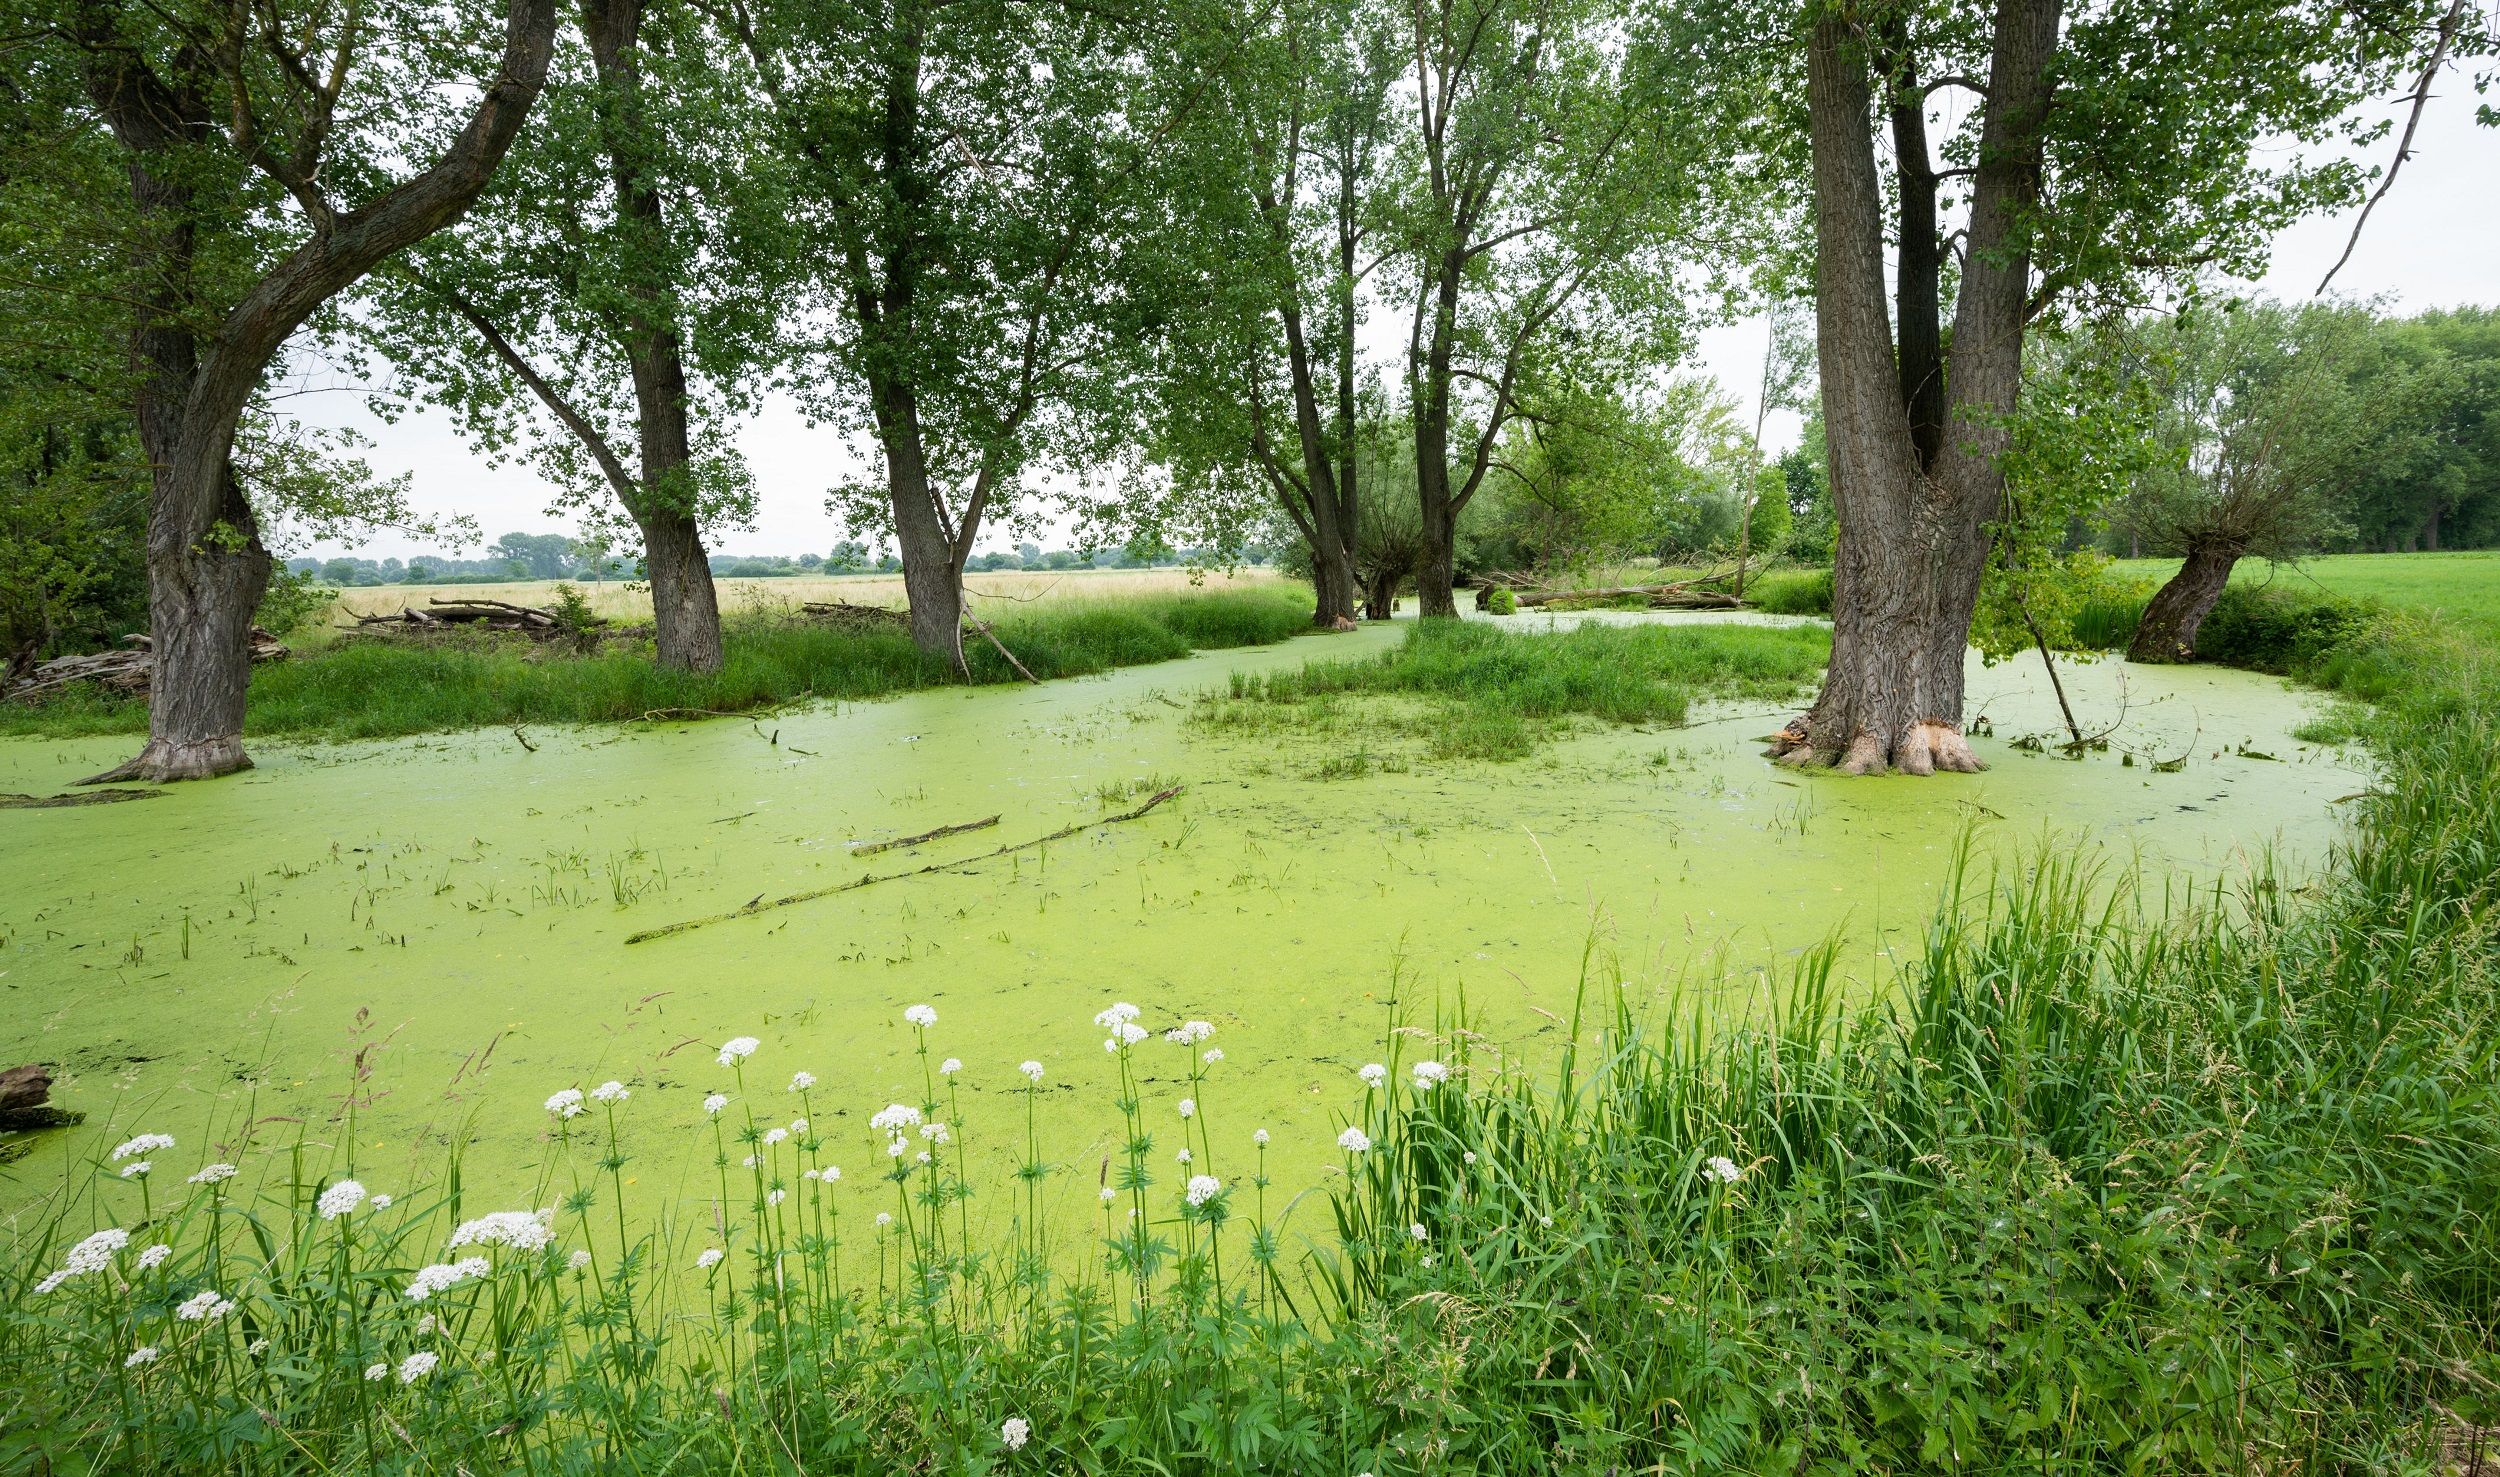 Grüner Teppich mit viel Potenzial: Wasserlinsen können zur Reinigung des Wassers und als Tierfutter eingesetzt werden. Foto: dpa/Stratenschulte